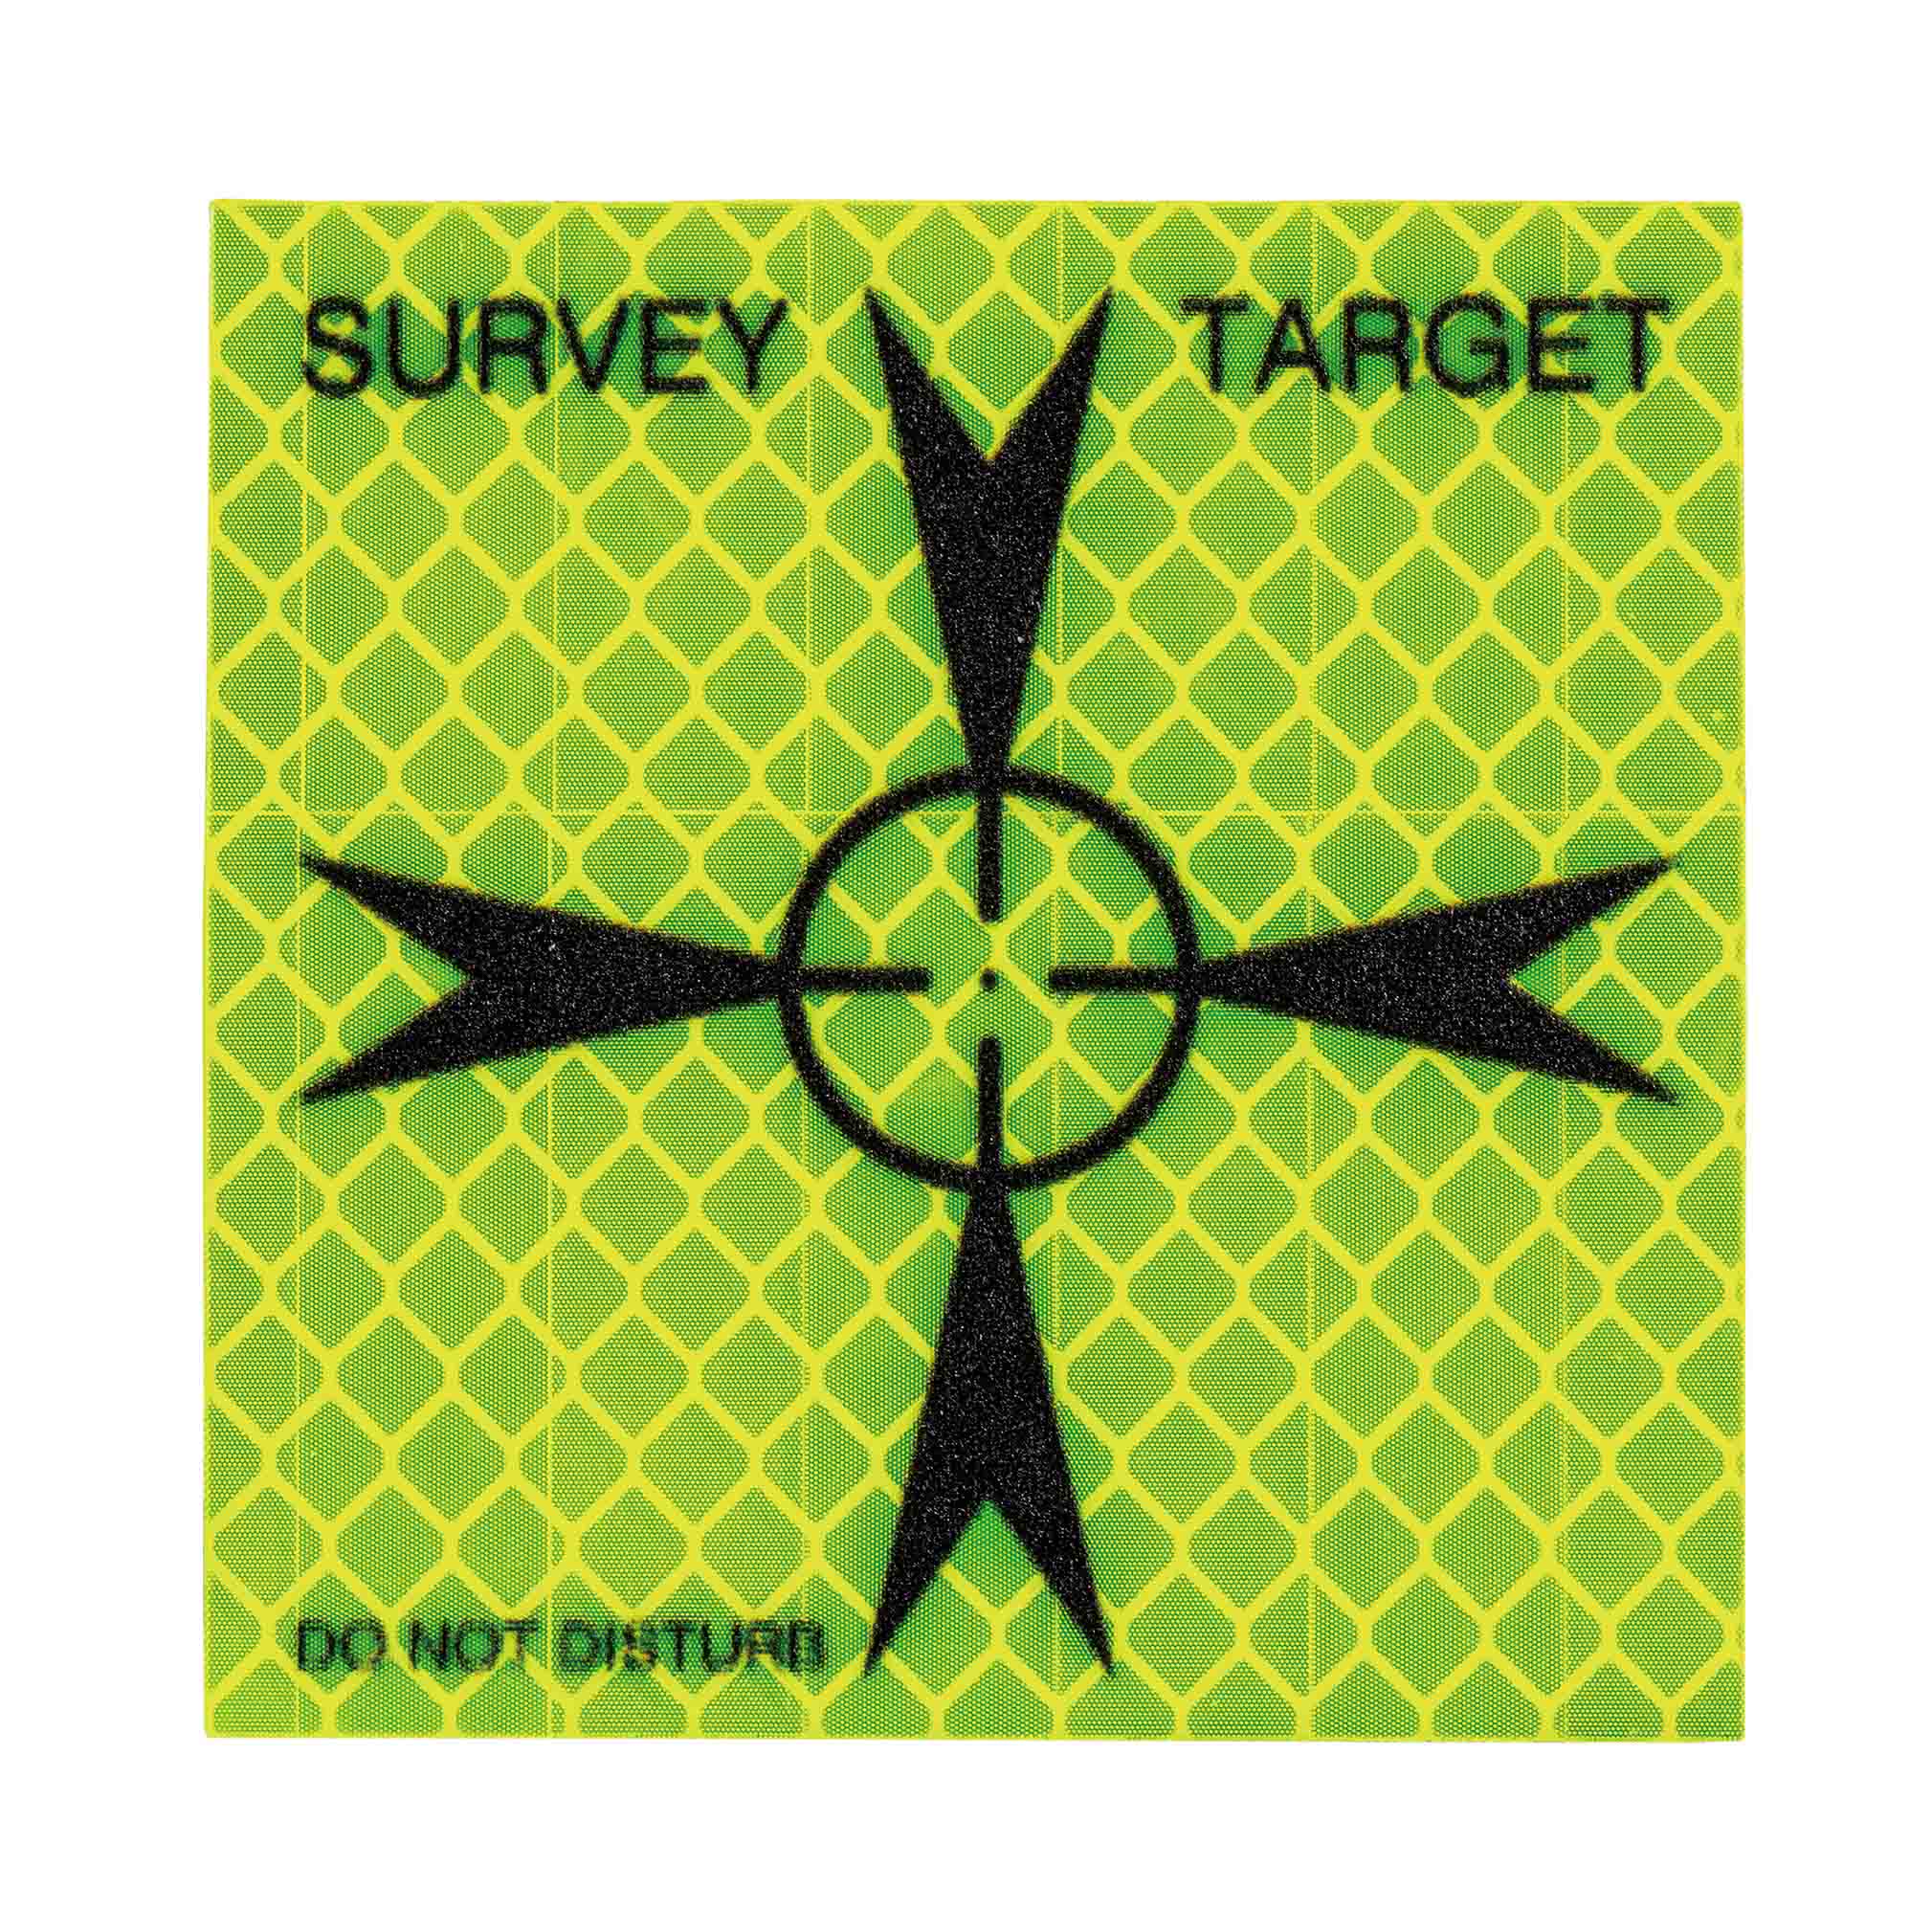 Retro Target